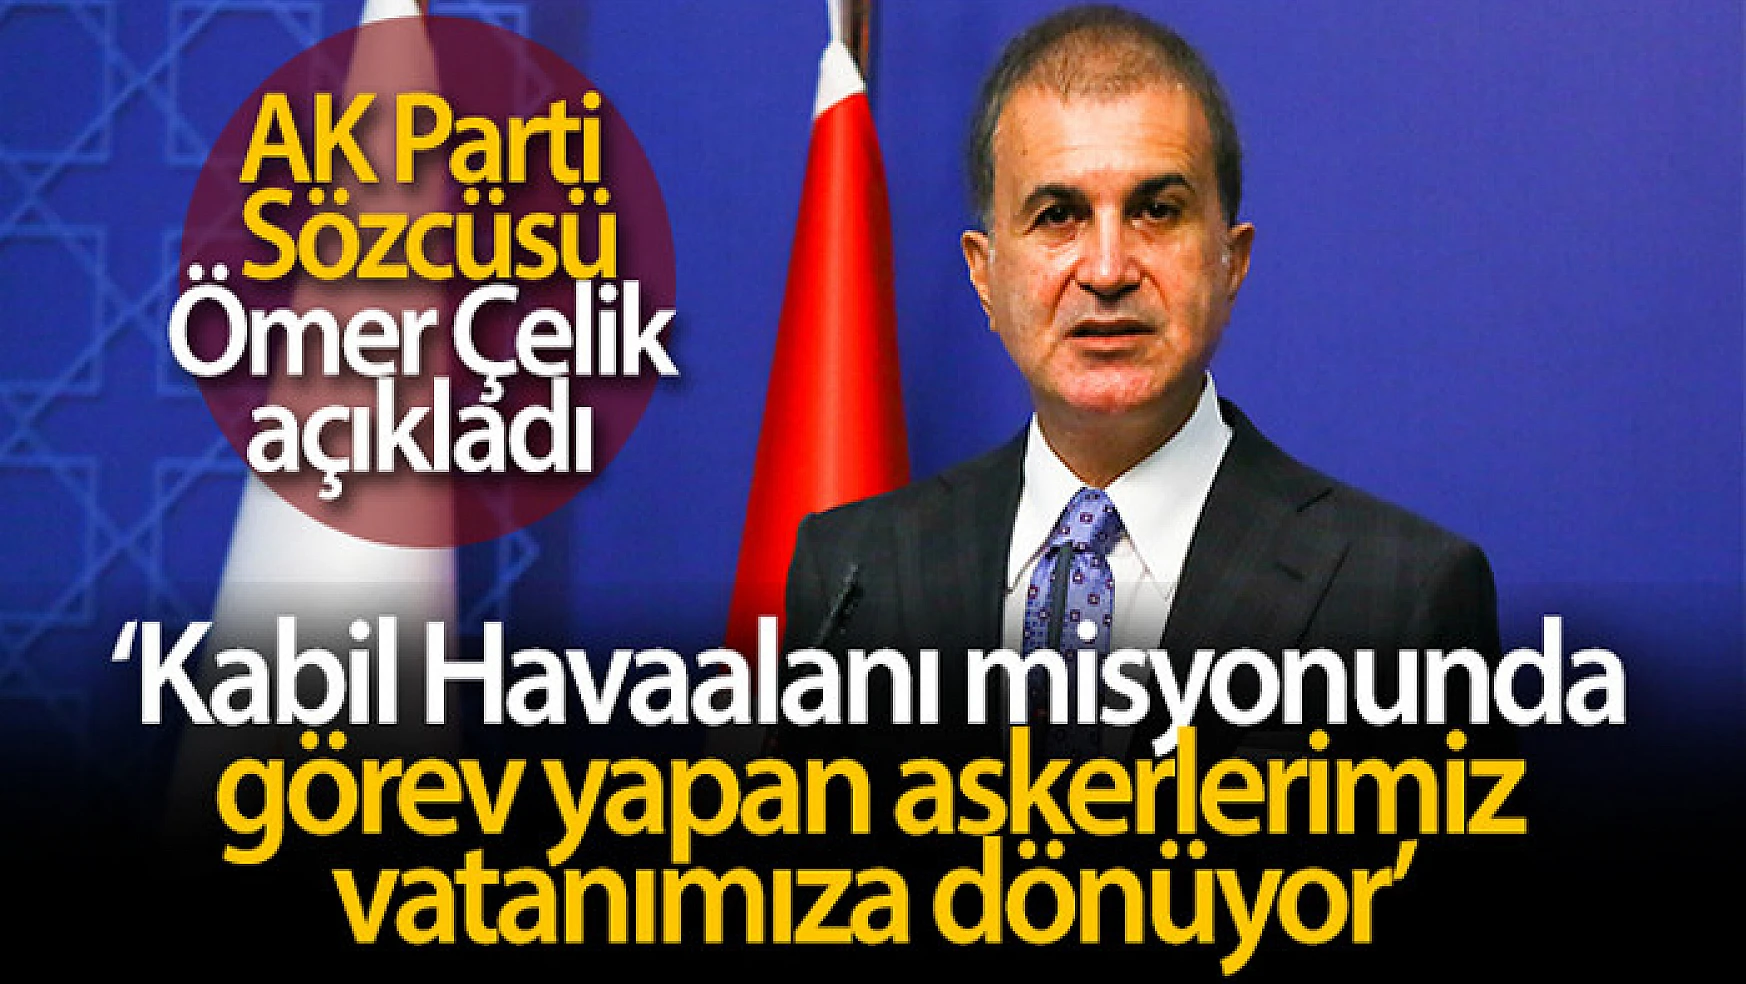 AK Parti Sözcüsü Çelik: 'Askerlerimiz vatanımıza dönüyor'